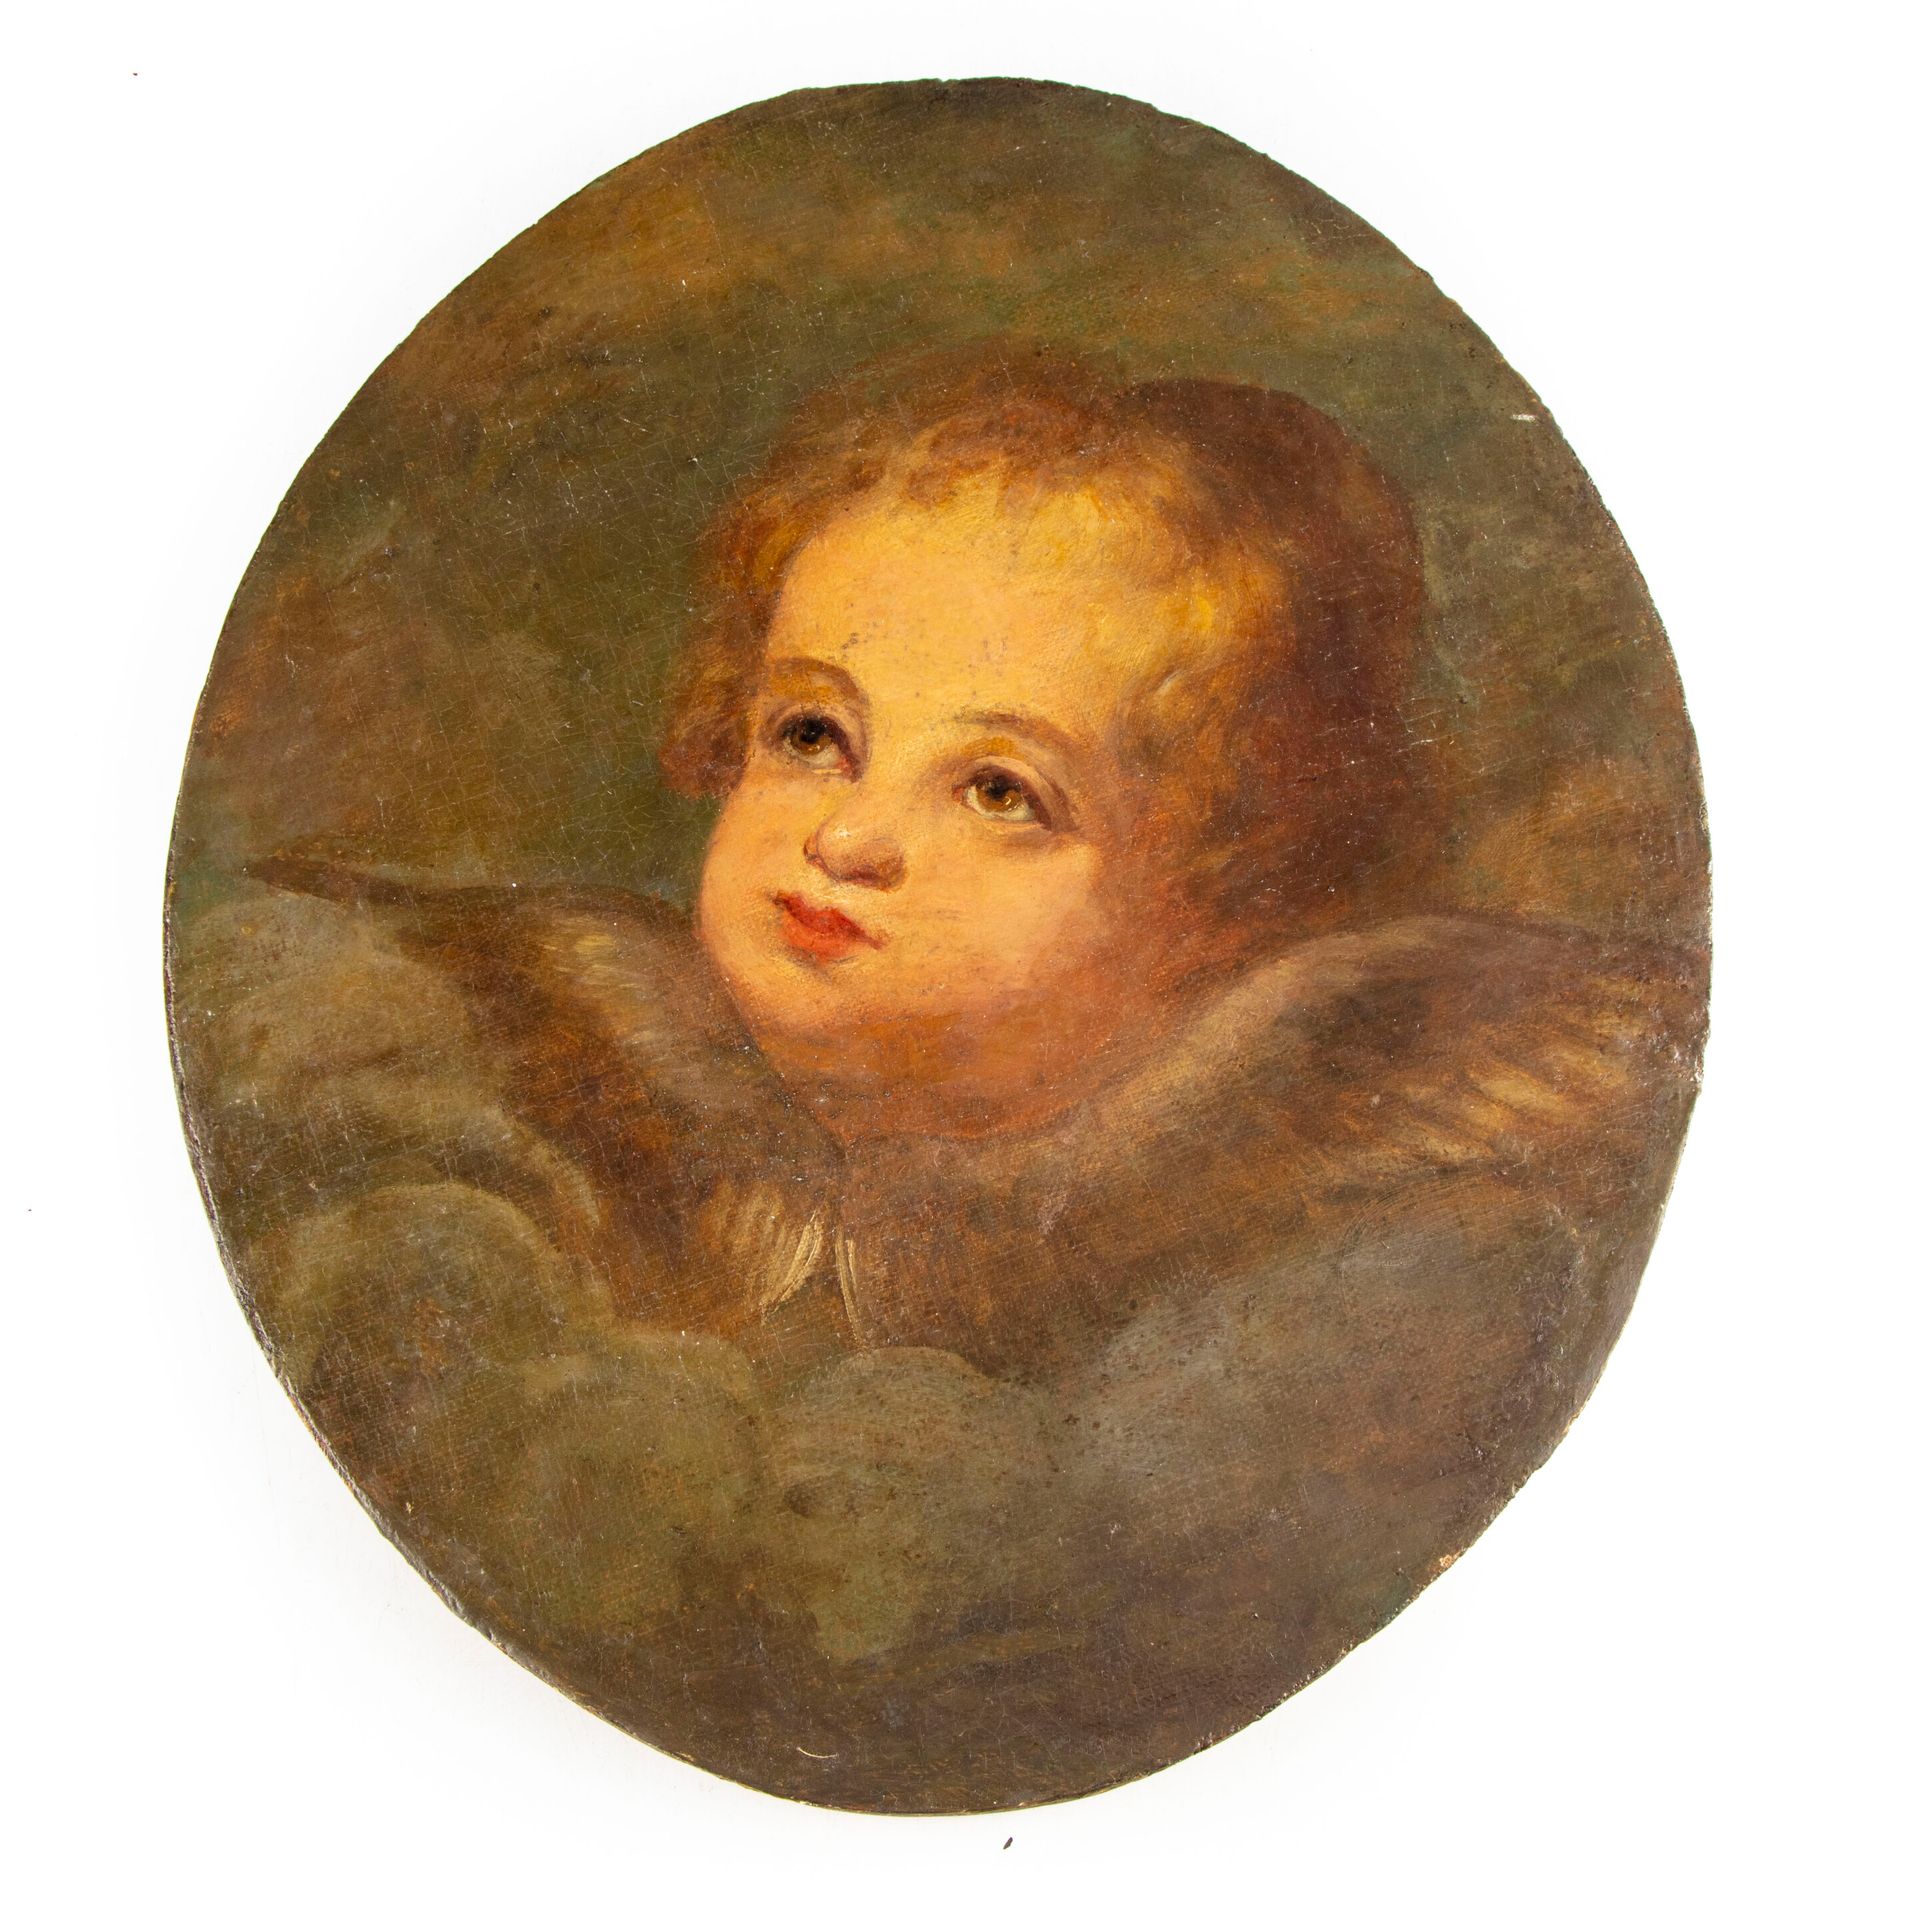 ECOLE FRANCAISE 18世纪法国学校

一个小天使的头

布面油画，装在面板上

40 x 33 cm

修缮